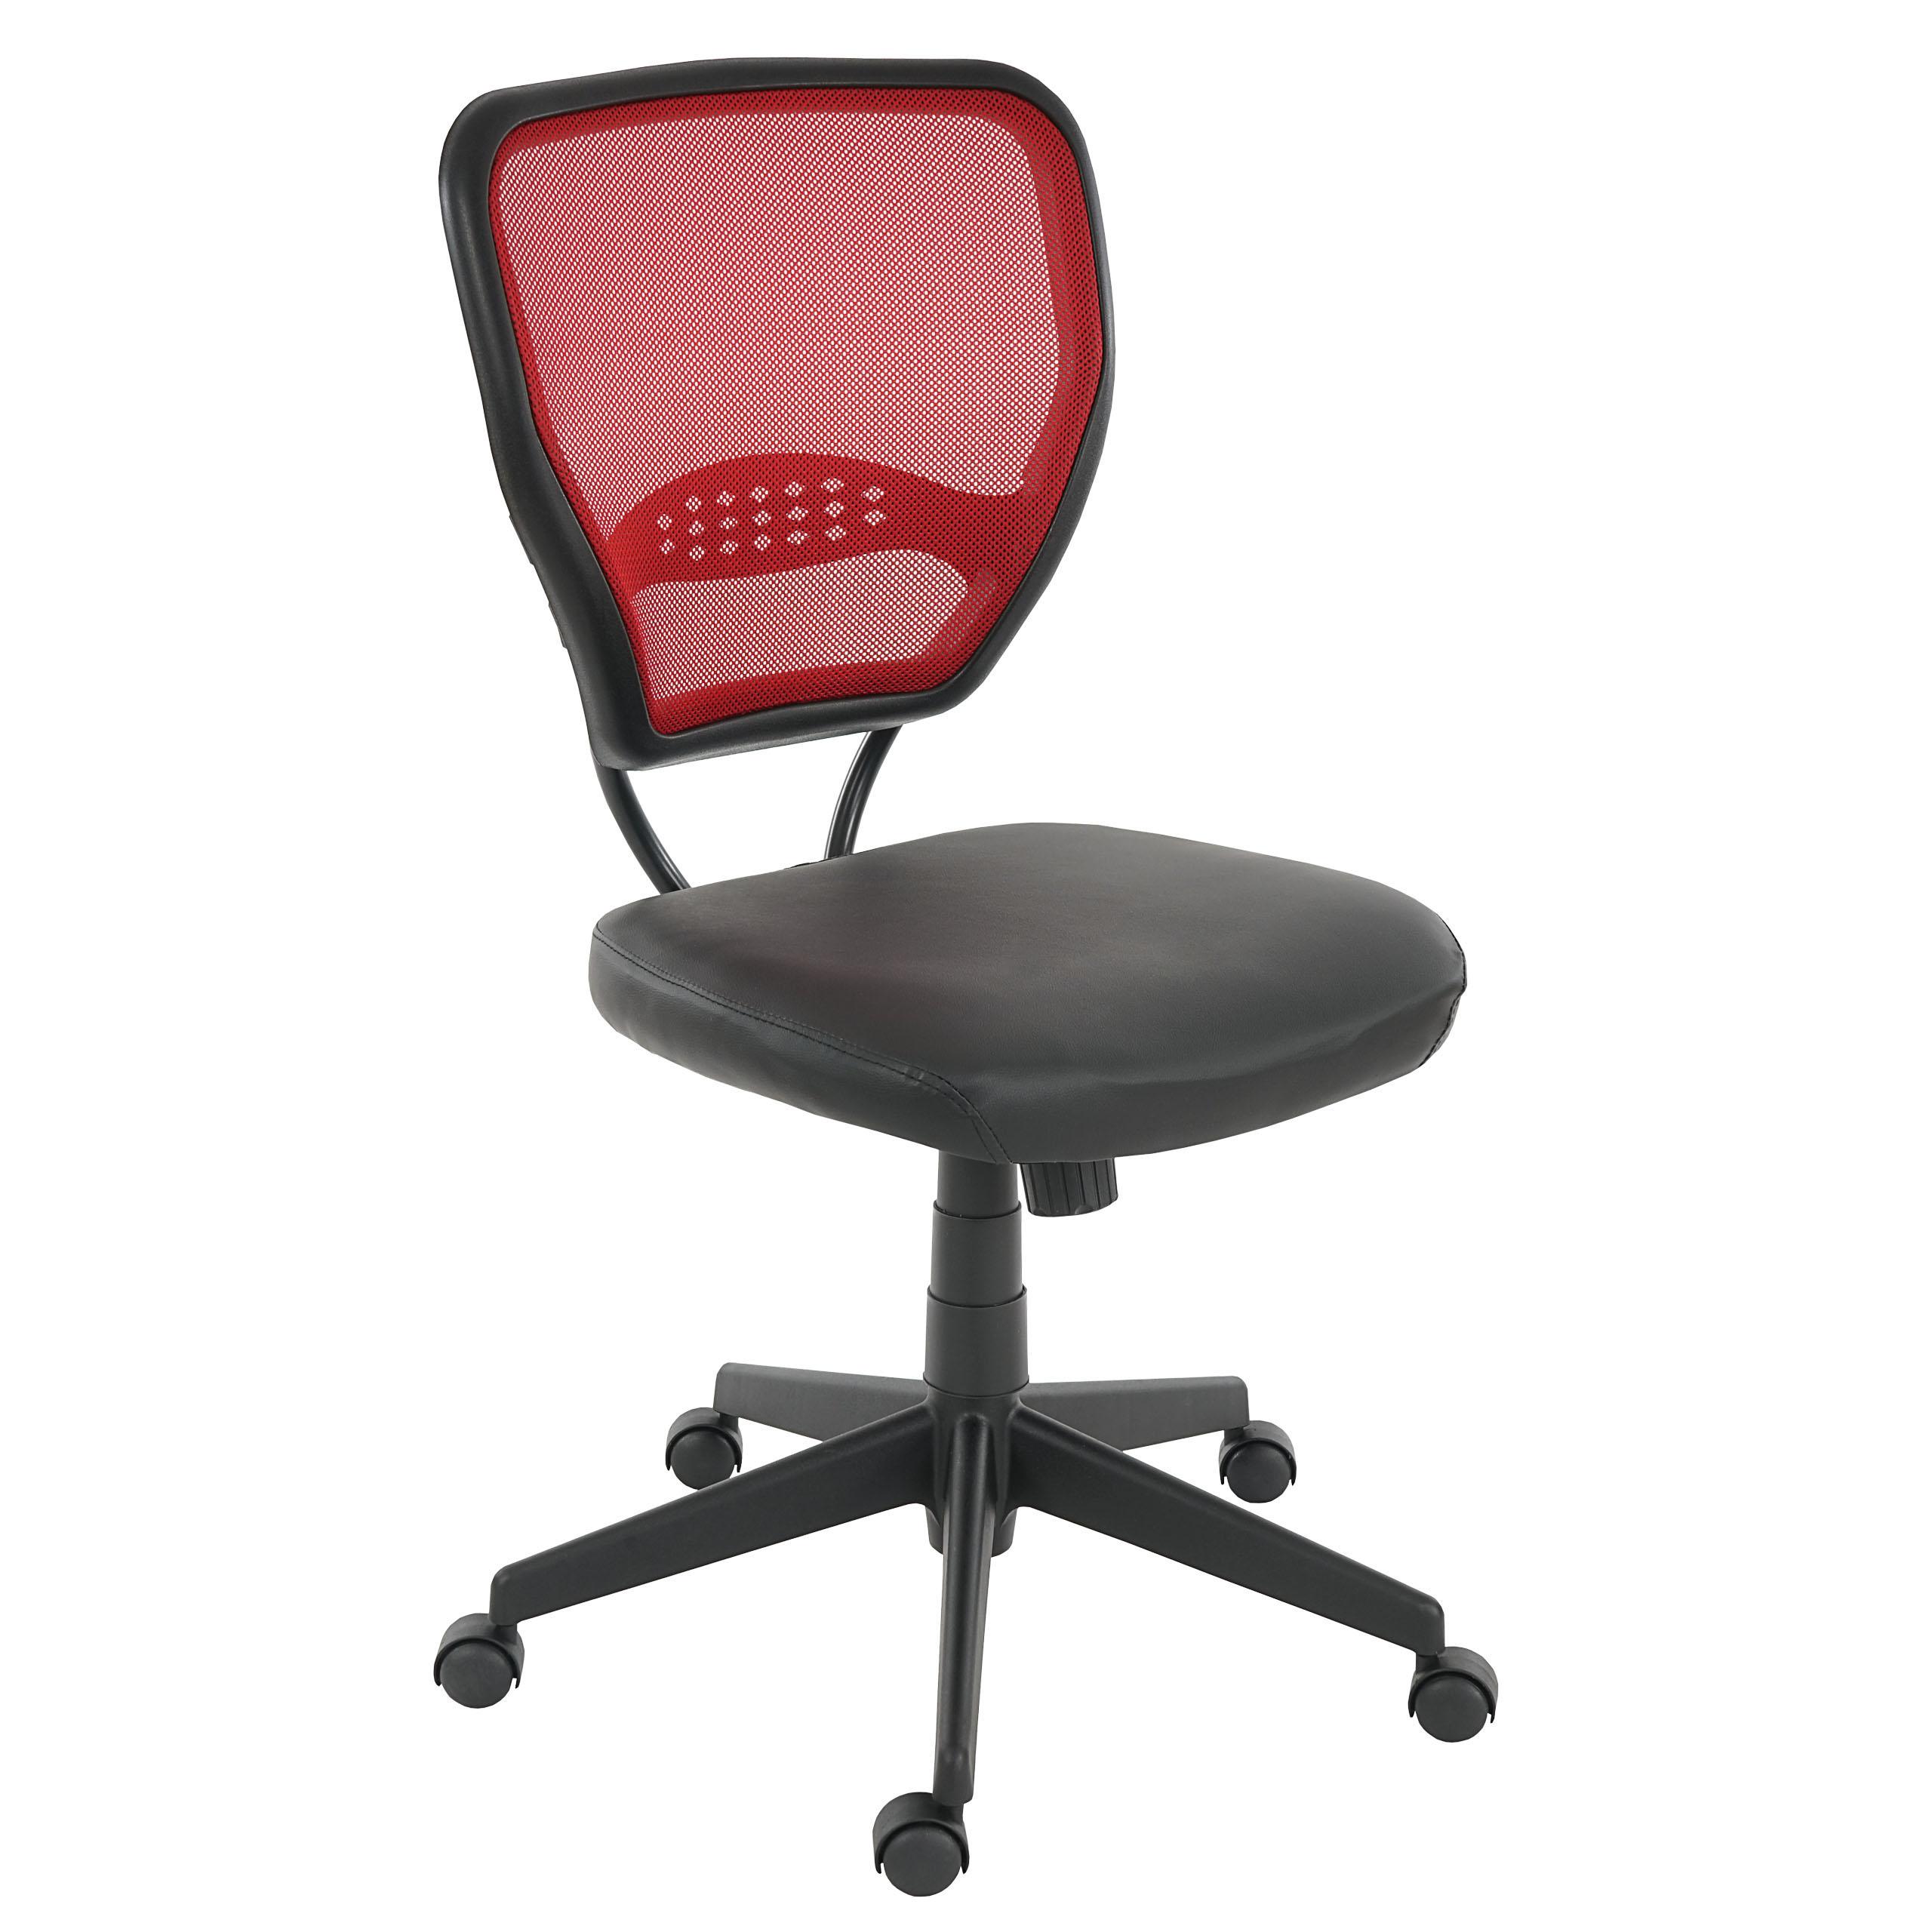 Chaise de bureau XXL (jusqu'à 150kg) TENOYA BASE  sans Accoudoirs, Dossier en maille, Rouge